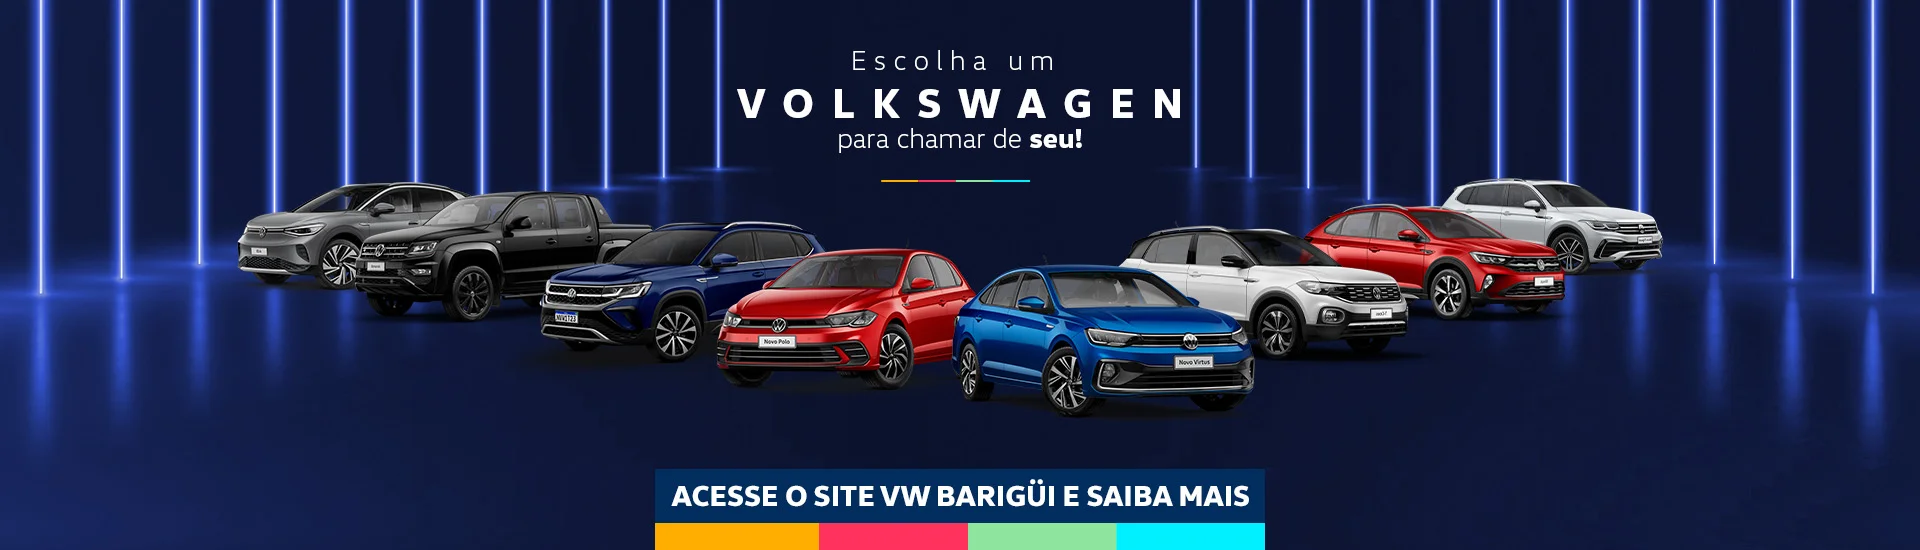 Volkswagen Barigui